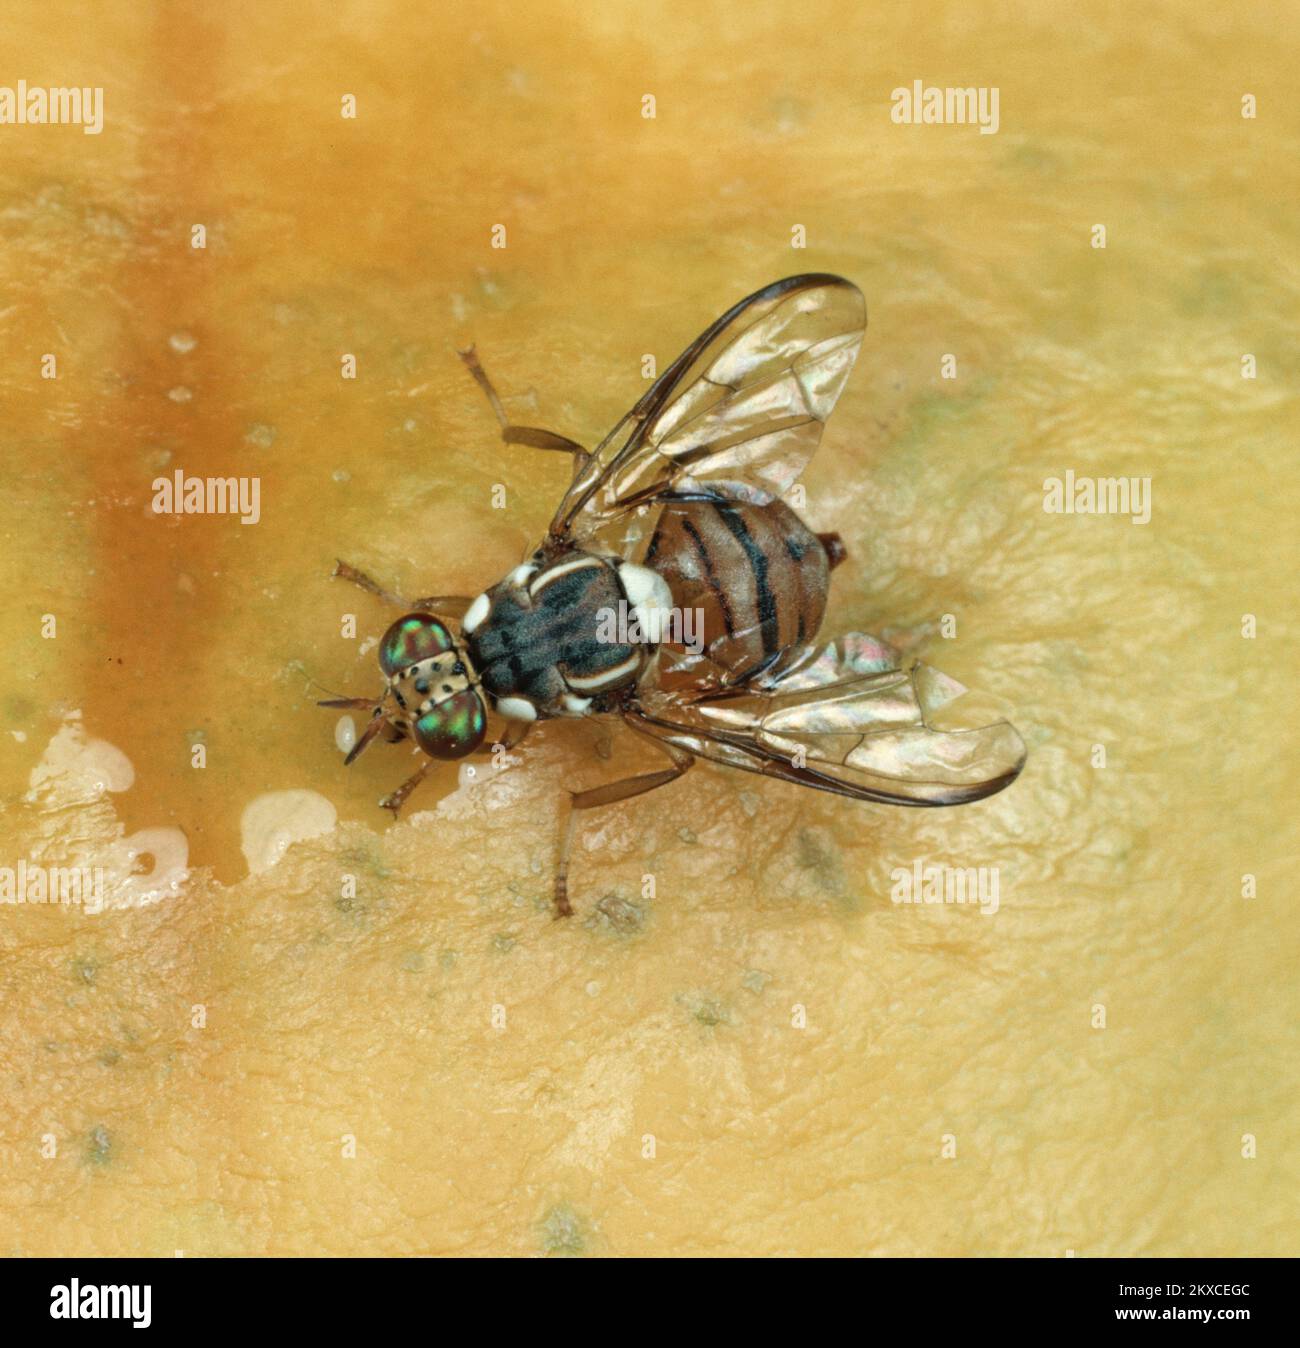 Mosca oriental de la fruta (Bactrocera dorsalis) plaga de la mosca adulta en la superficie de una fruta de papaya Foto de stock